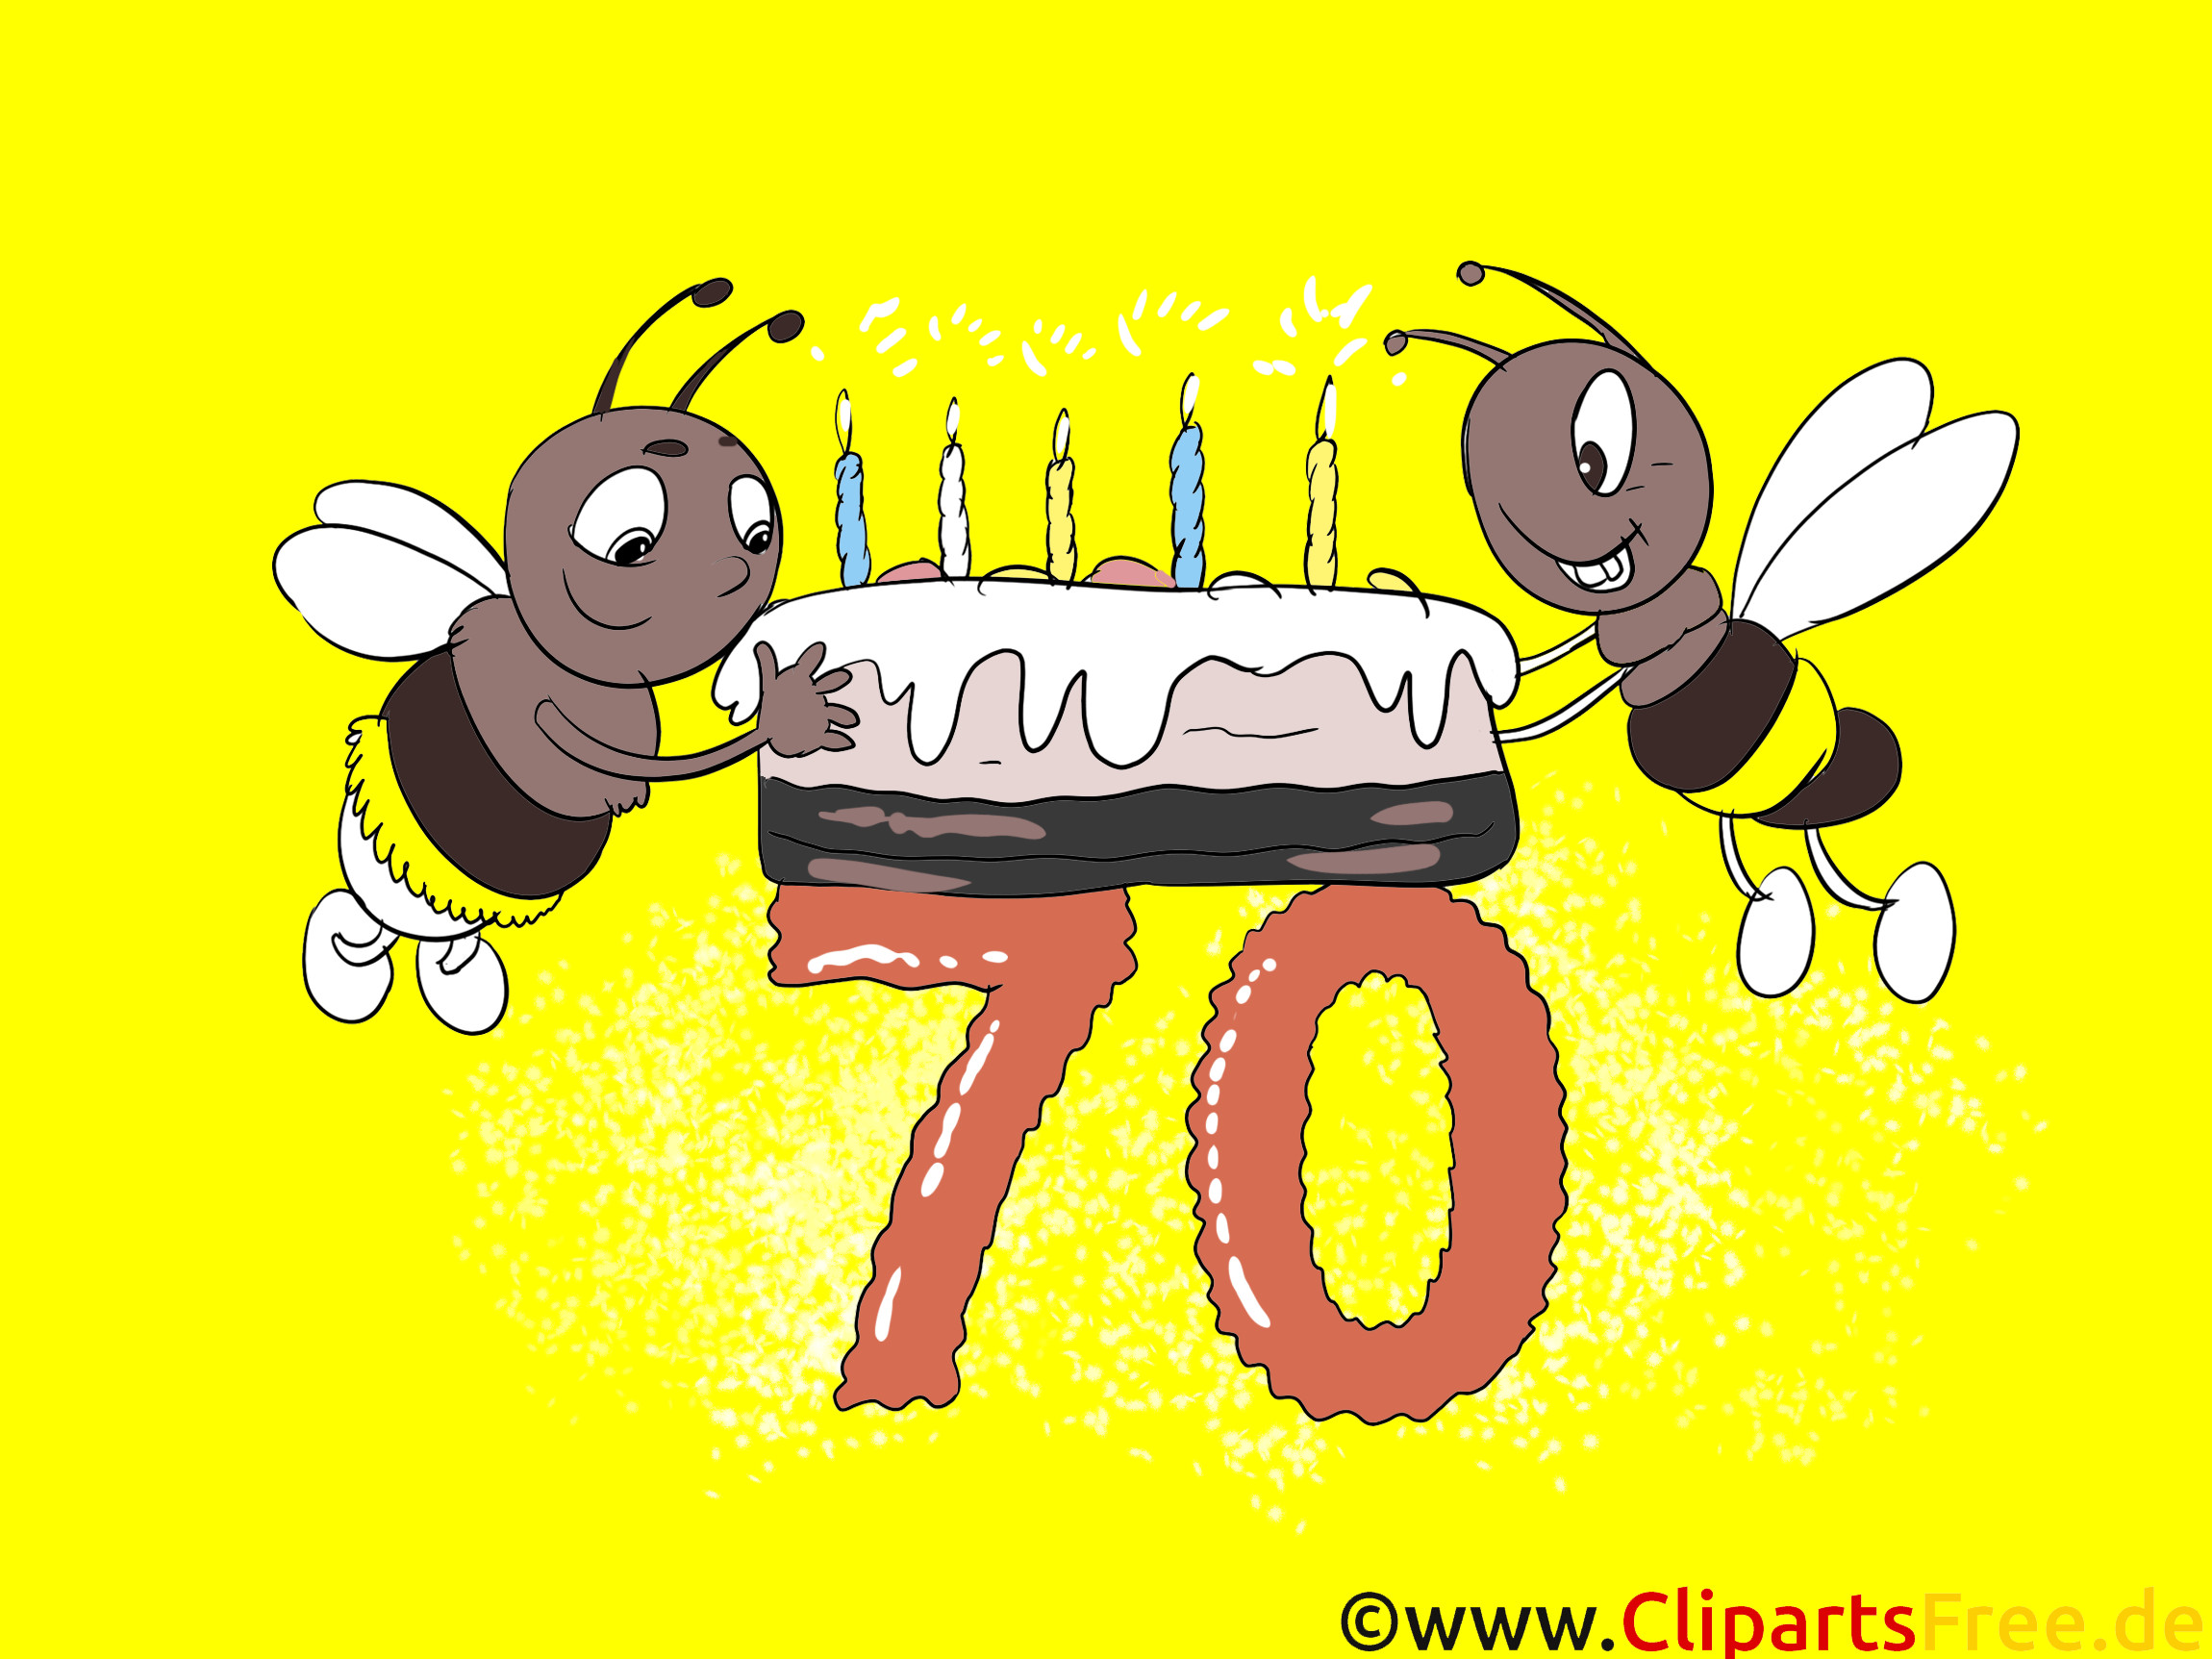 Geburtstagskarten Kostenlos Gestalten Und Ausdrucken
 Geburtstagskarten Glückwünsche selbst gestalten zum 70